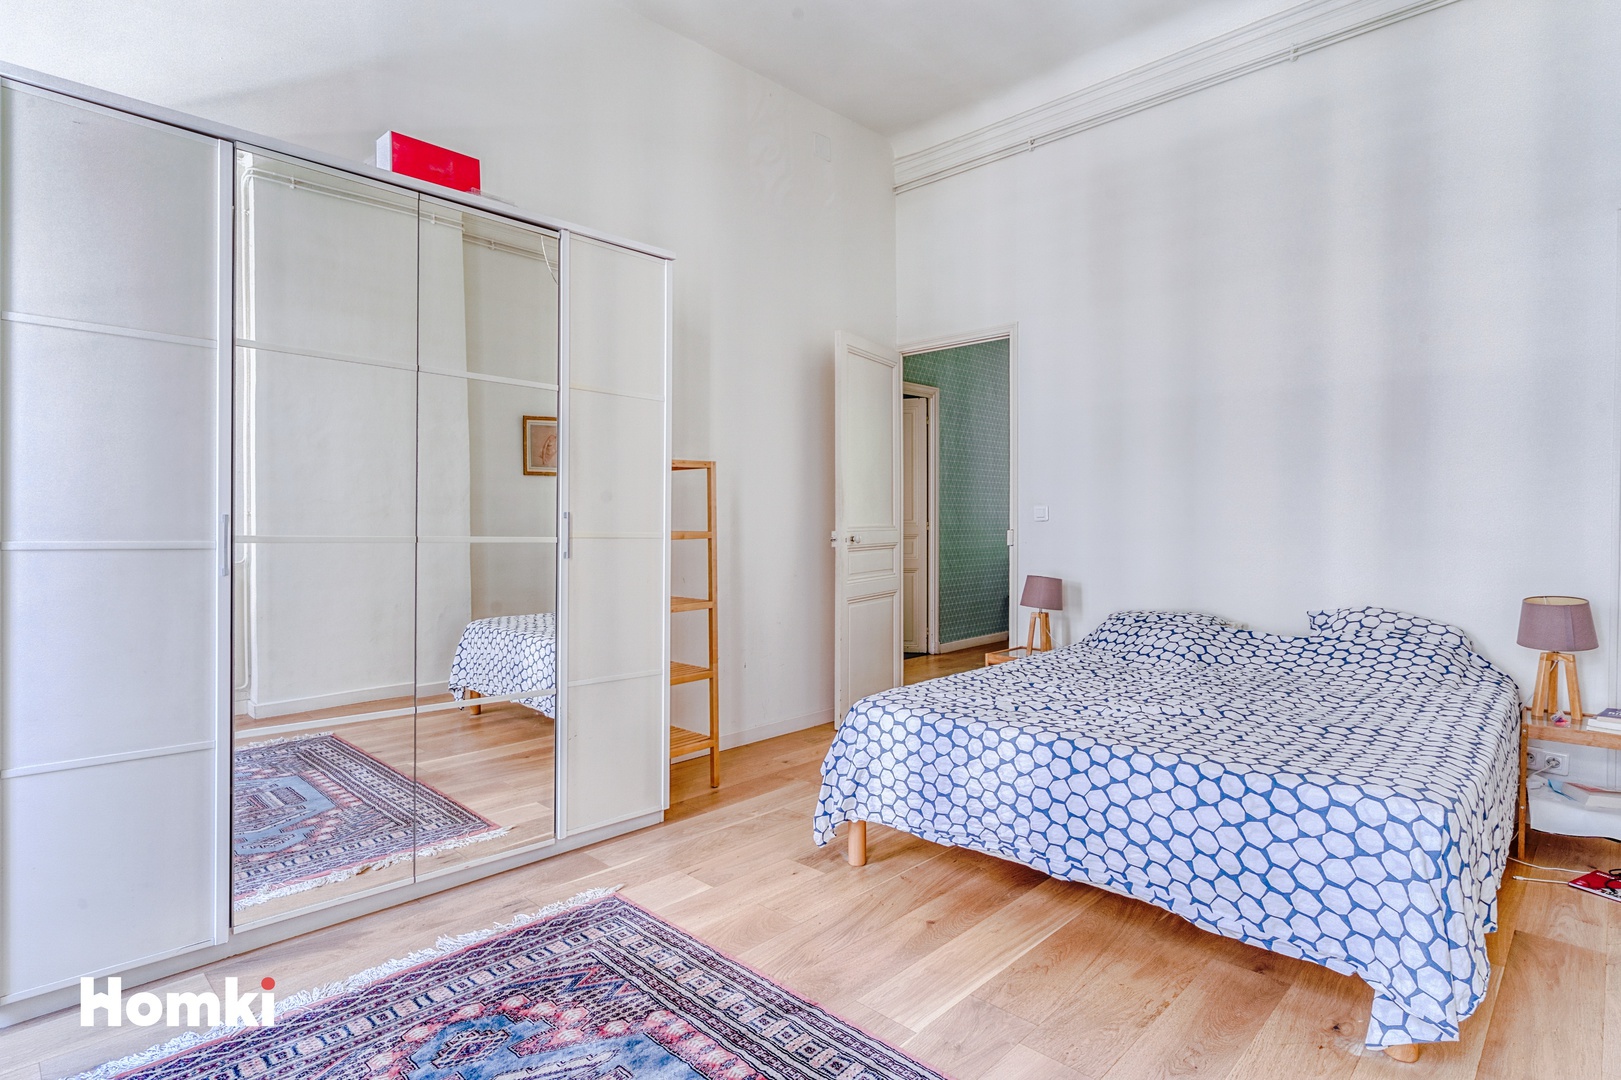 Homki - Vente Appartement  de 93.0 m² à Marseille 13008